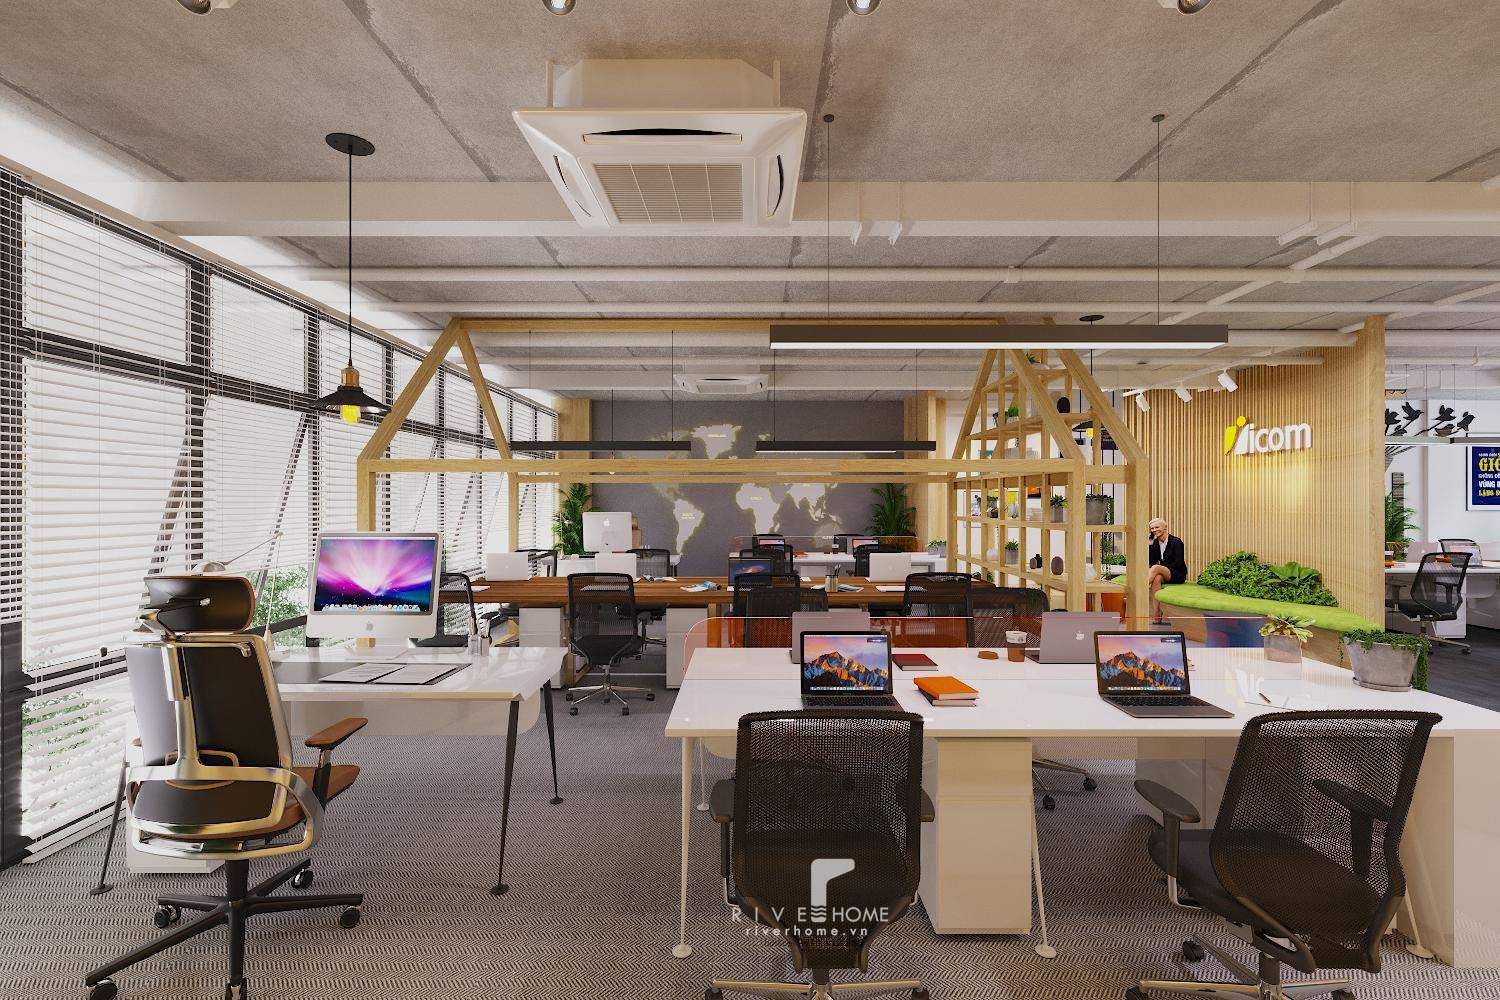 Thiết kế văn phòng Icom hiện đại và sáng tạo - xu hướng mới cho không gian làm việc